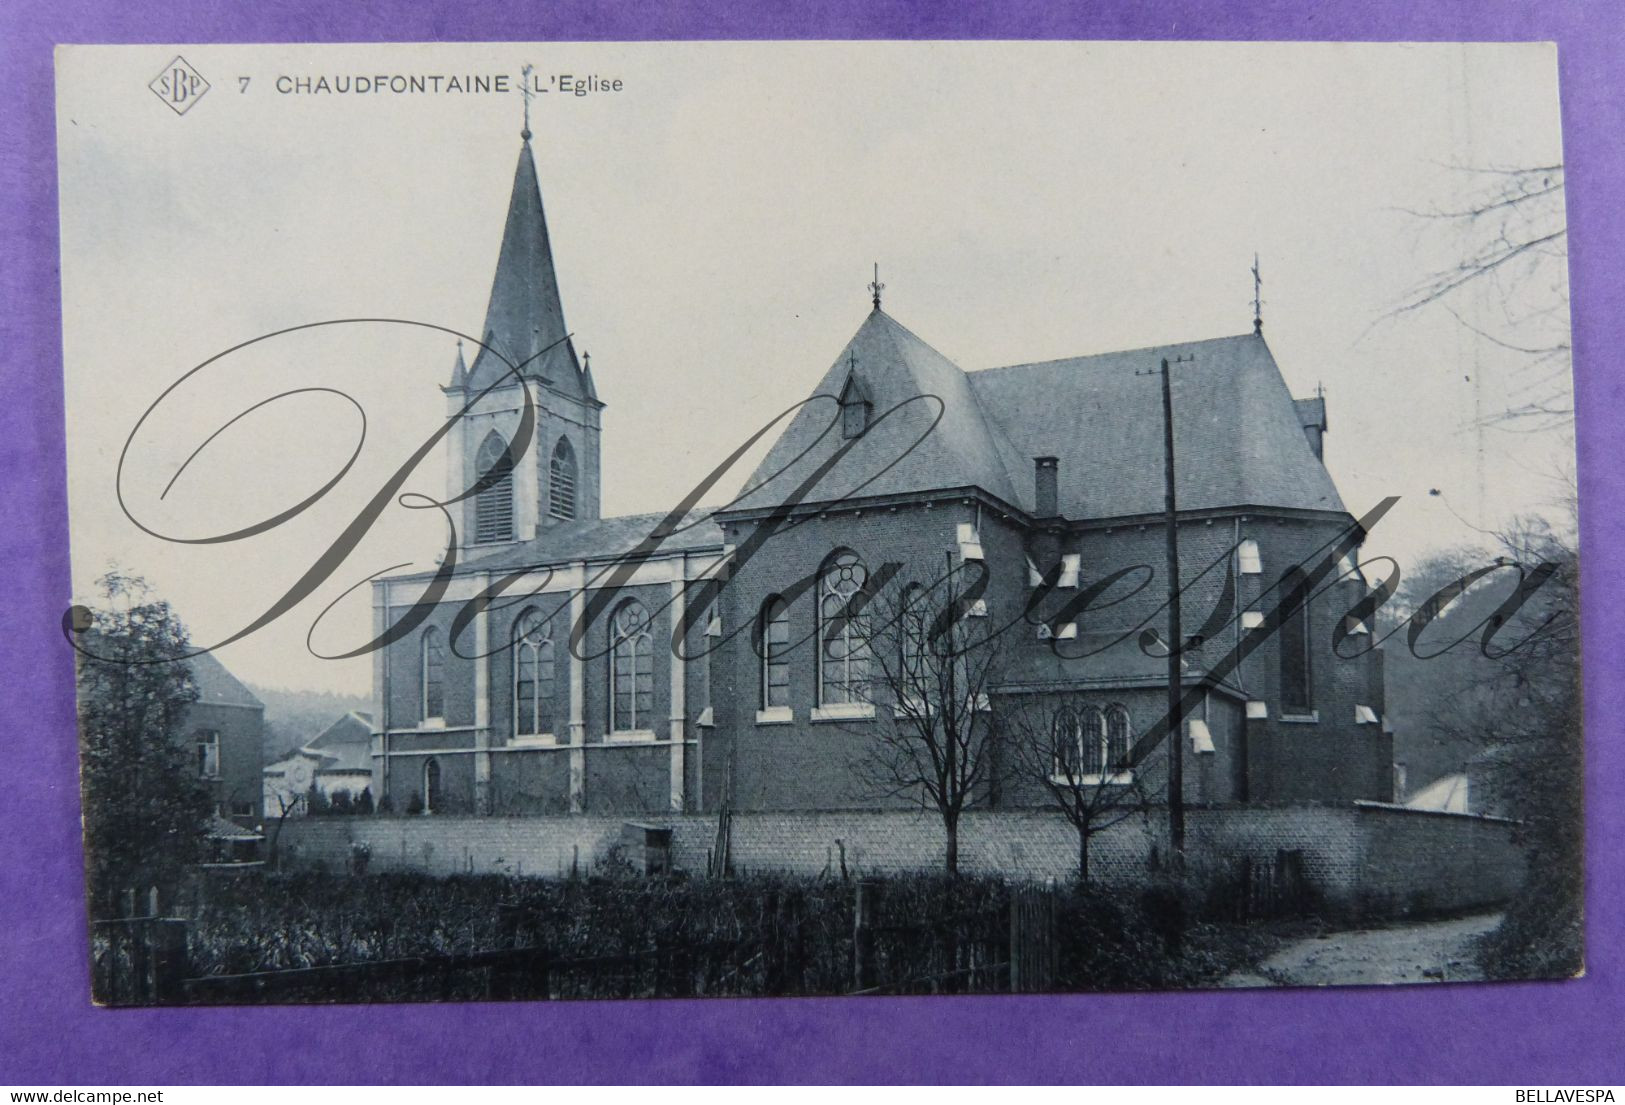 Chaudfontaine Eglise SBP N°7 - Chaudfontaine